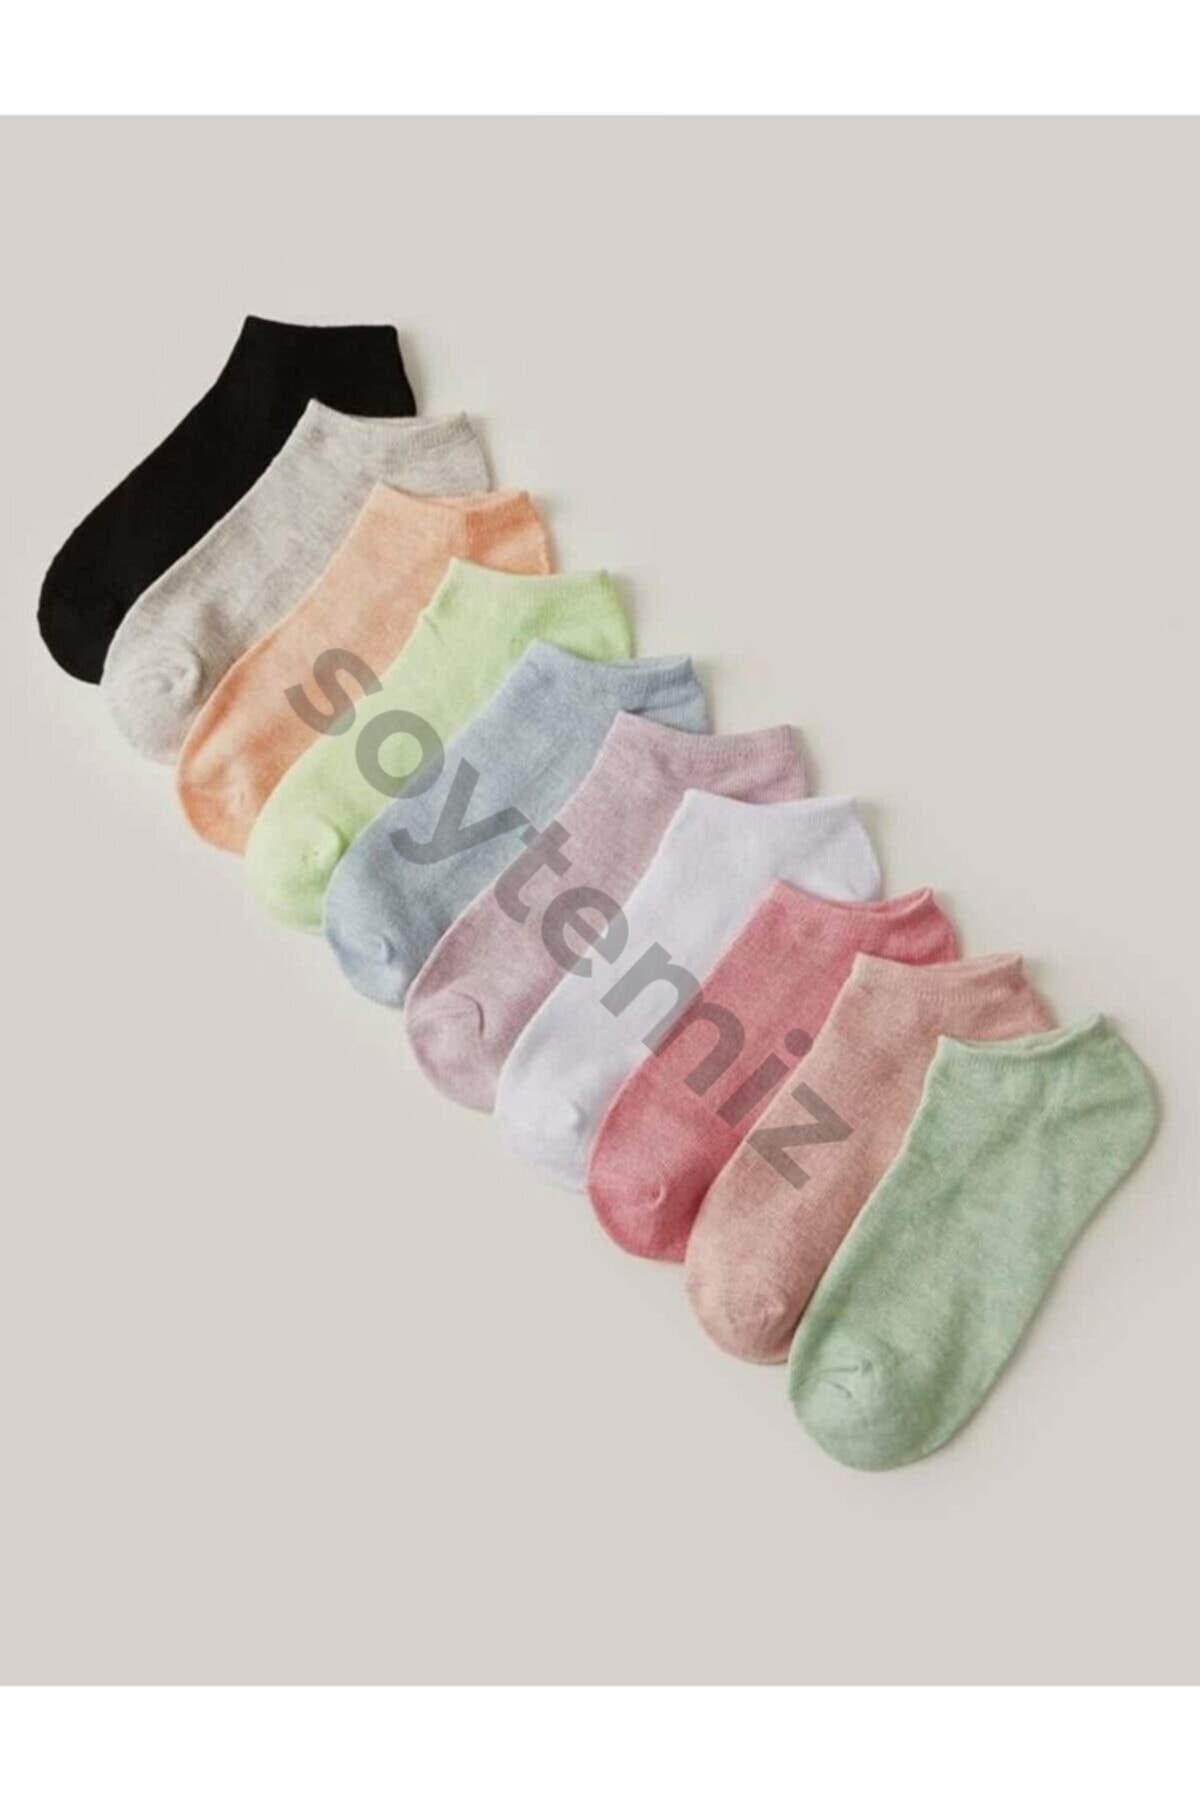 SOYTEMİZ ÇORAP 10 Çift Koton Karışık Renk Kadın Patik Çorap